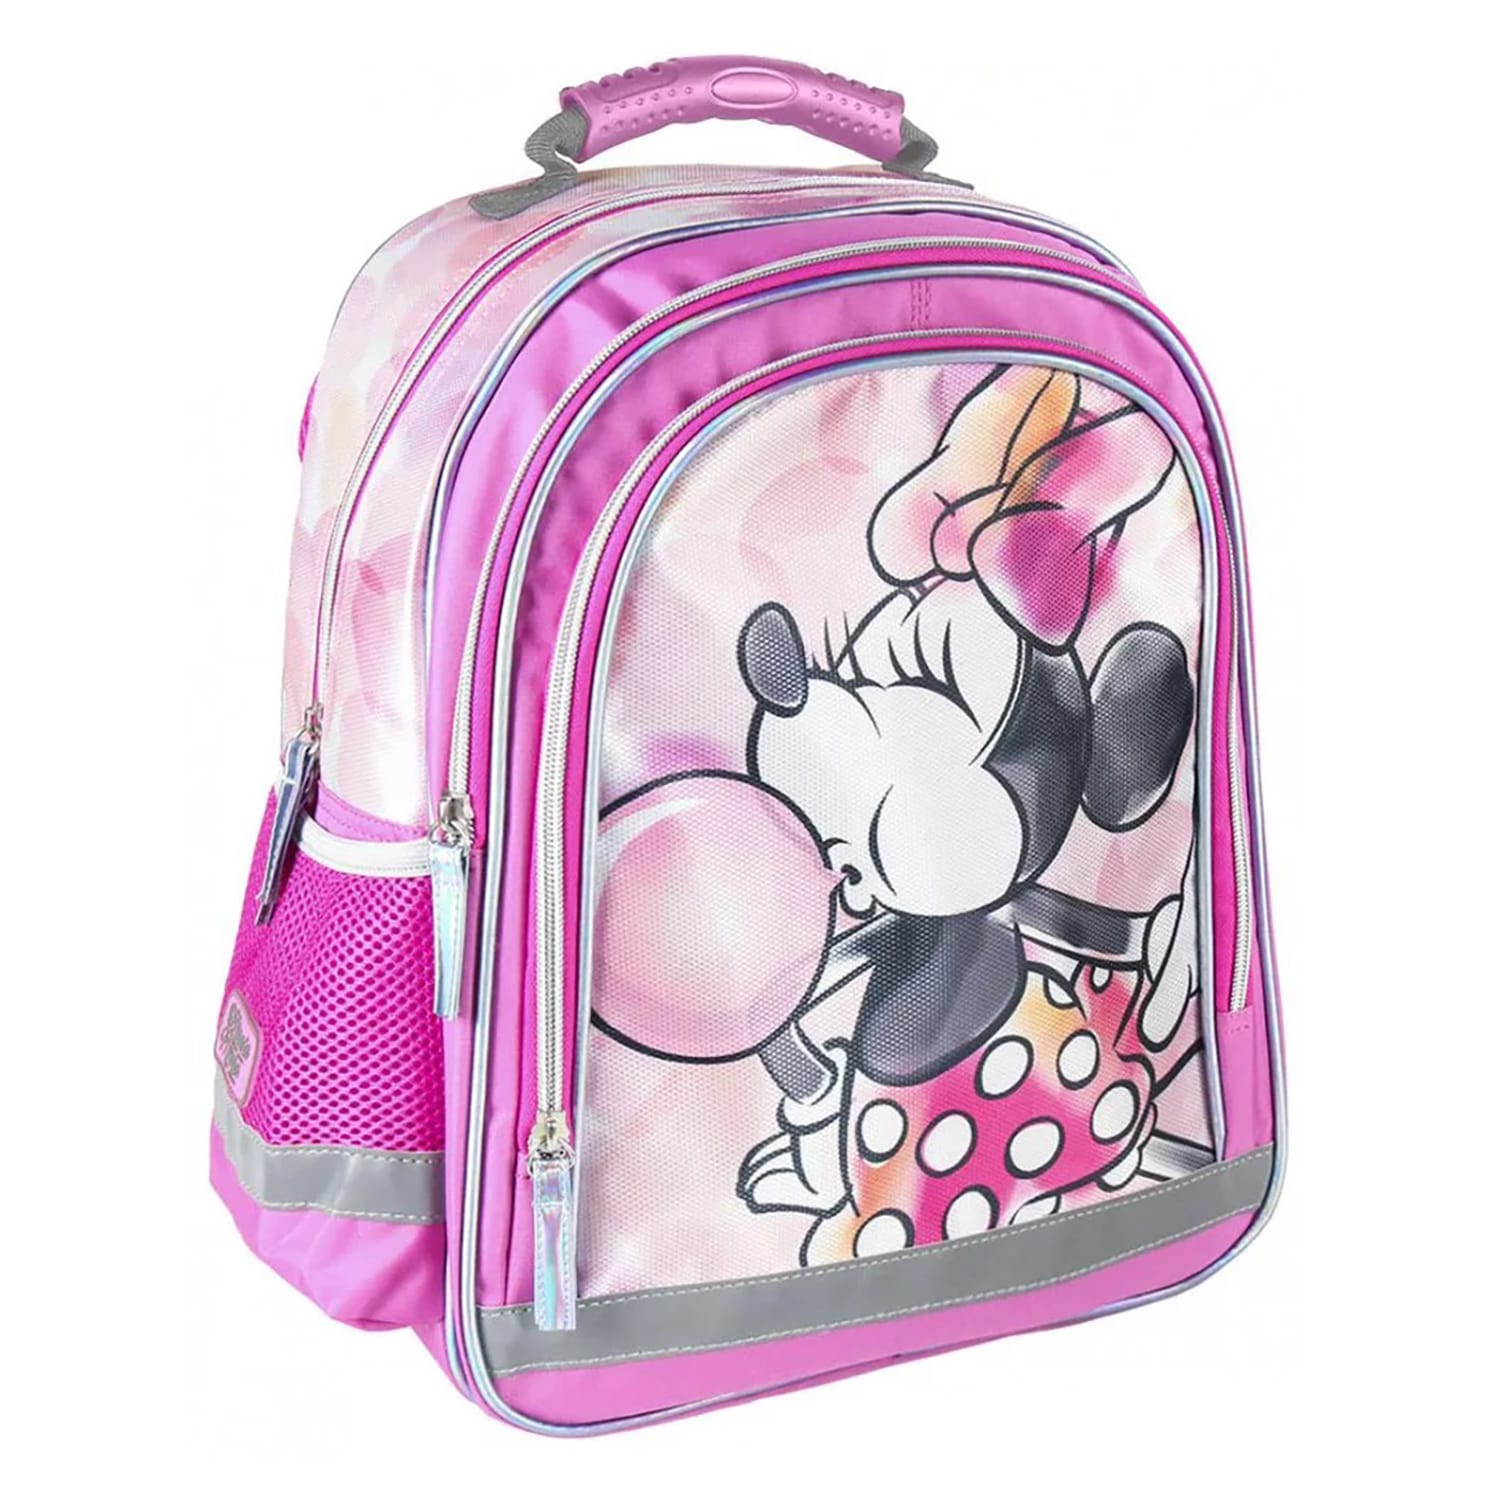 Zaino Disney Minnie Mouse zainetto ufficiale con bretelle bambini scuola 4314